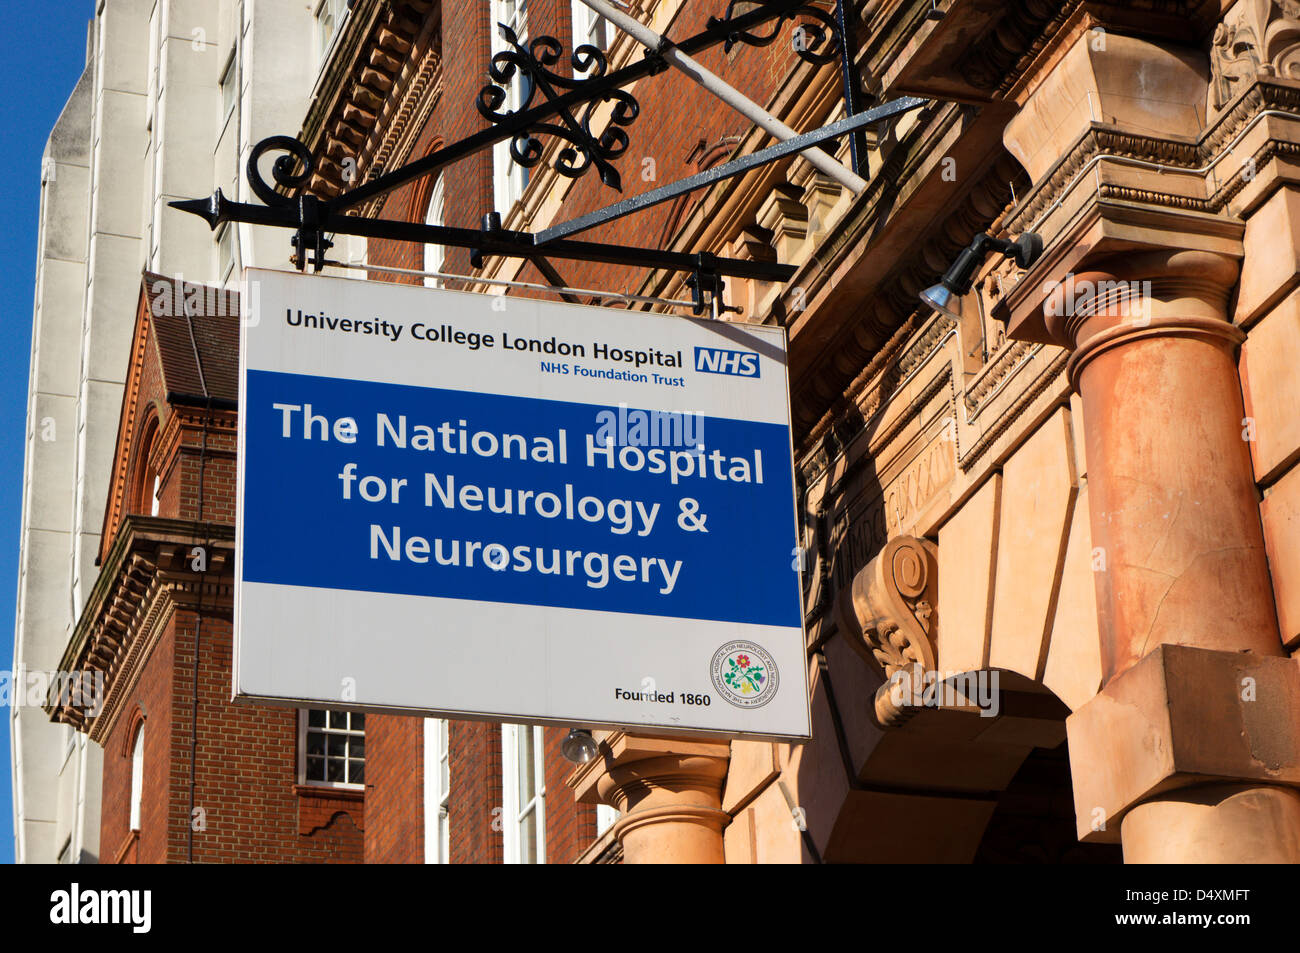 Anmeldung für "The National Hospital für Neurologie & Neurochirurgie", Teil des University College London Hospital in Queen Square. Stockfoto